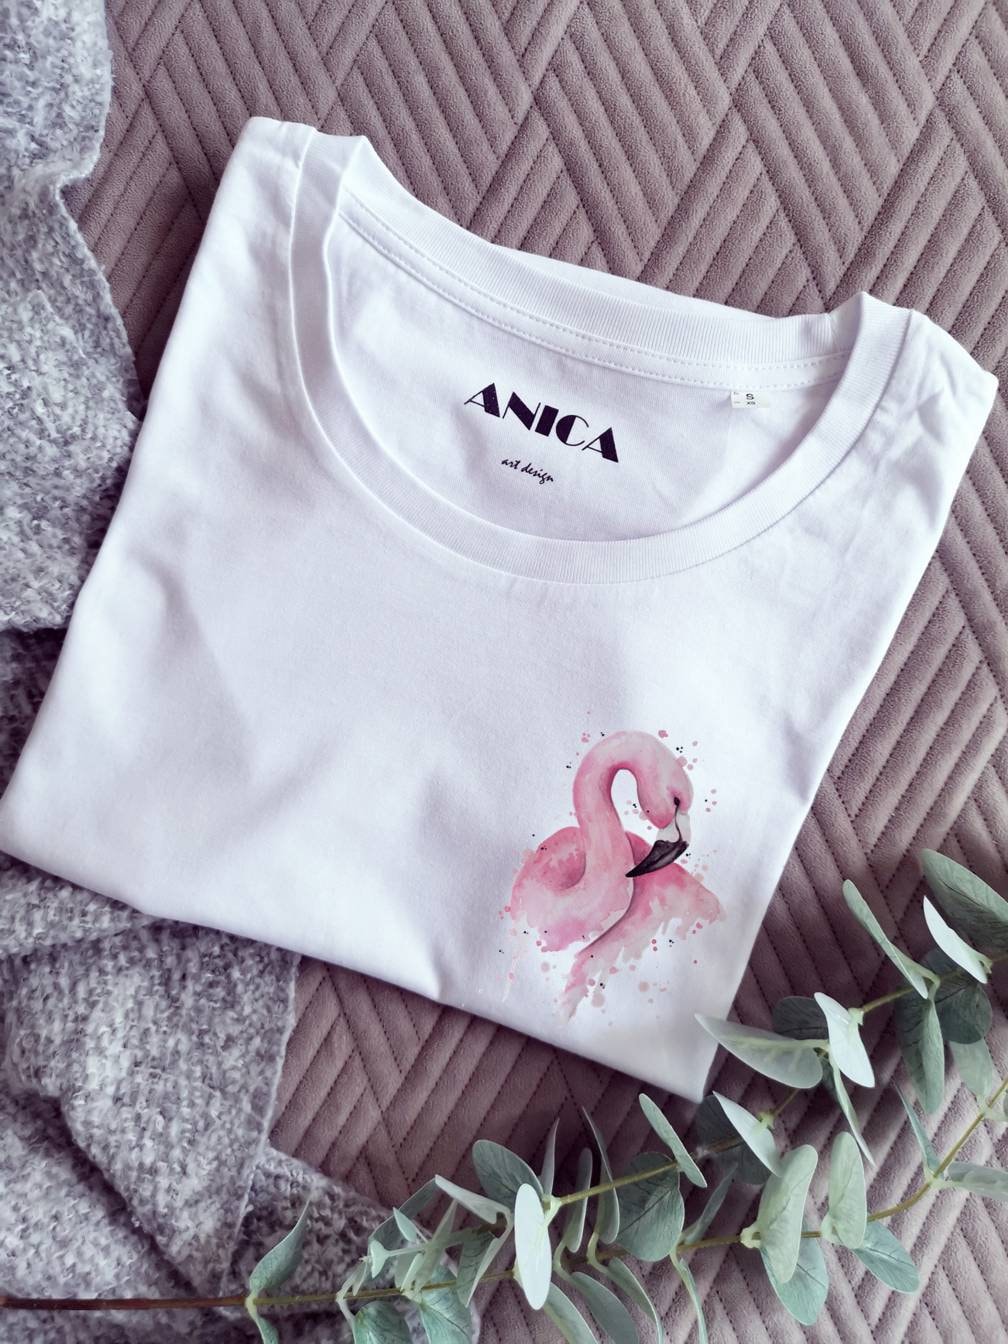 Aquarell Flaming Shirt, T Shirt Geschenk, Damen T-Shirt Mit Kleinem Flamingo Muster, Kurzer Arm, Geschenk Für Frauen von ANICAartdesign